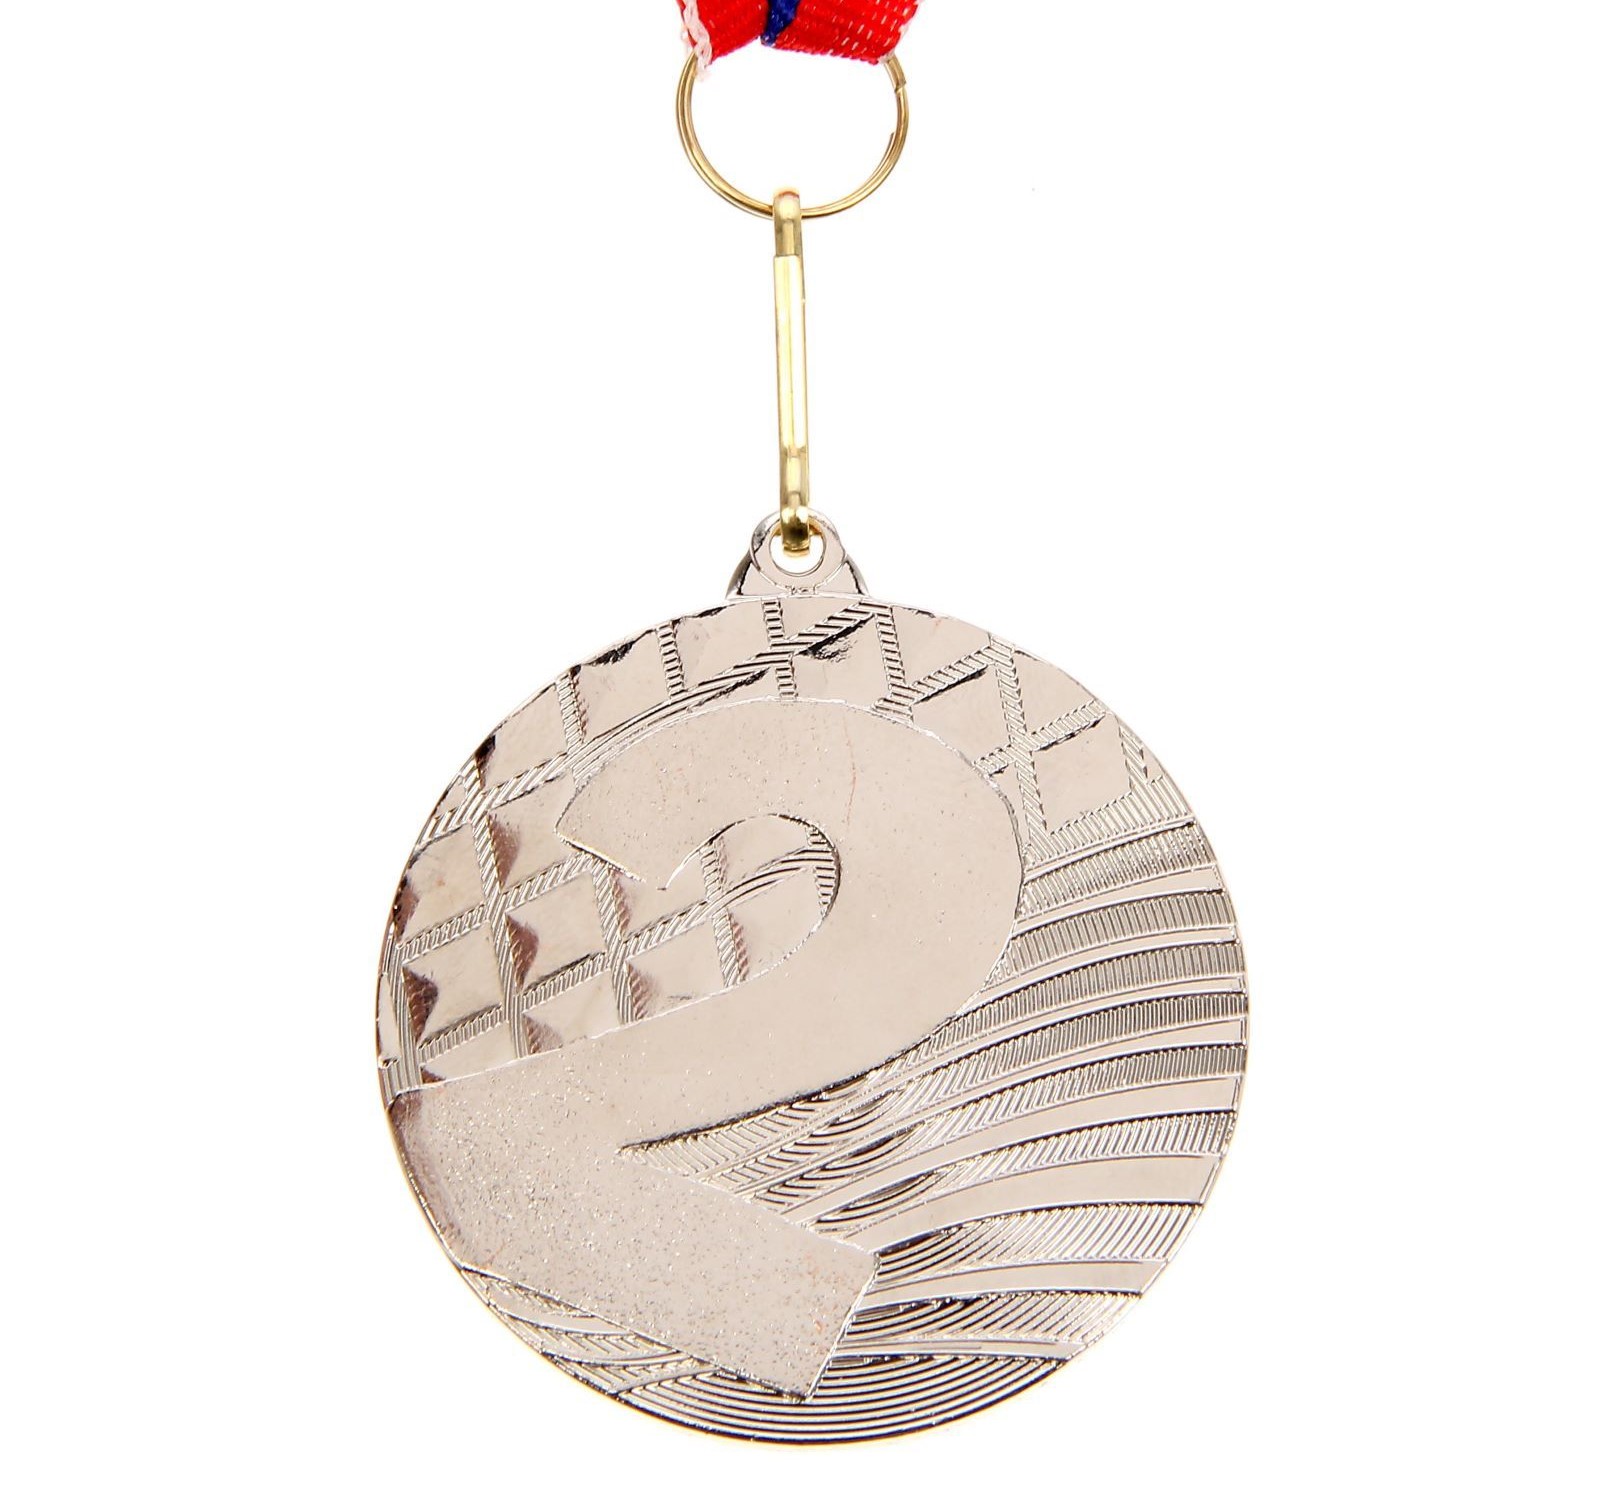 Медаль призовая Командор, 2 место, серебро, диаметр 5 см